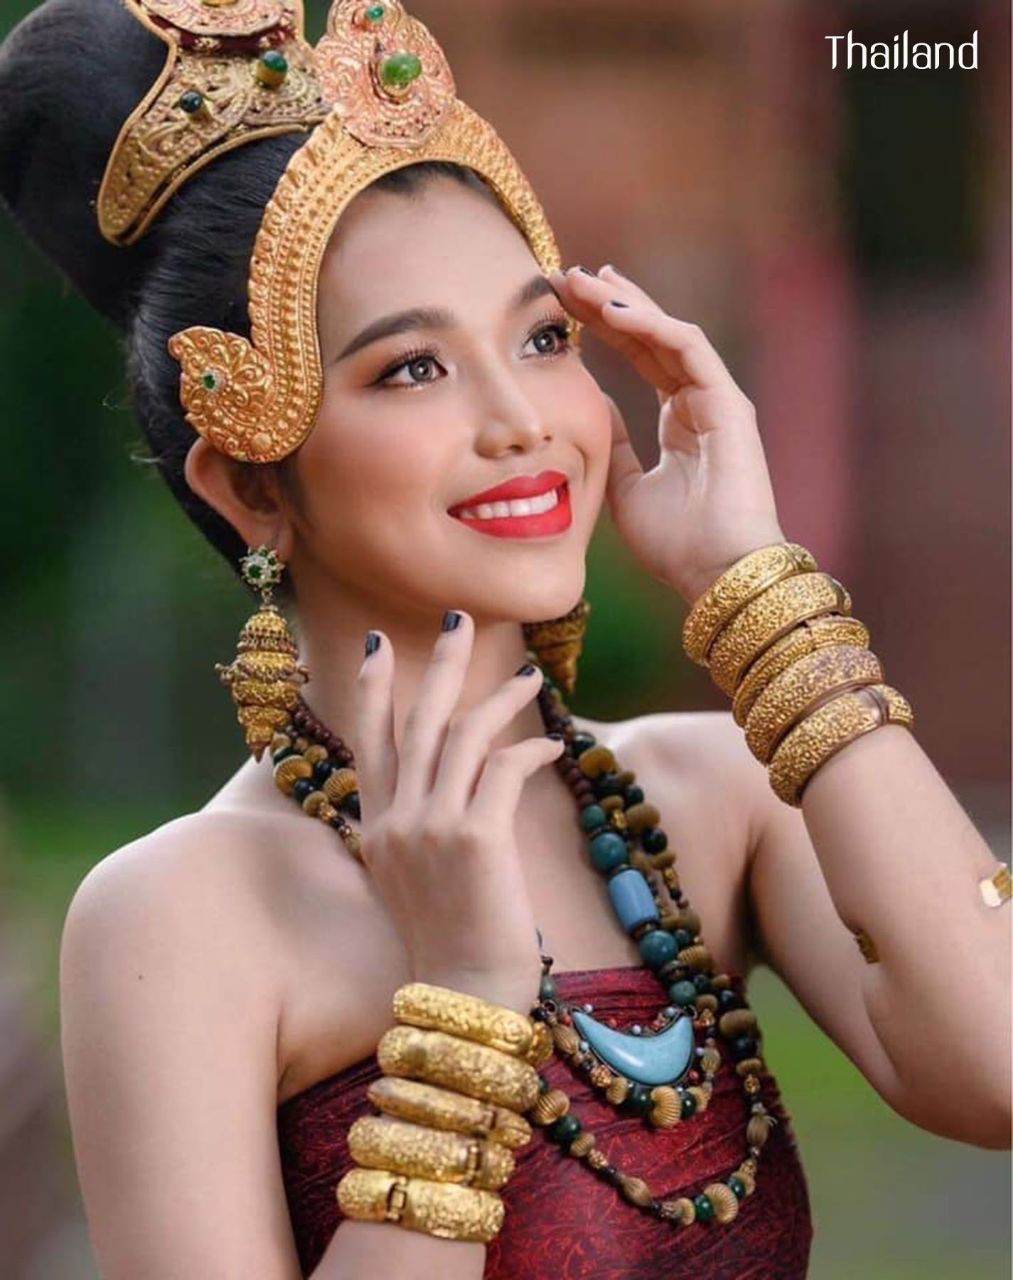 ทวารวดี ภาคอีสาน -The outfit of Dvaravati Era in Northeastern Thailand | THAILAND 🇹🇭